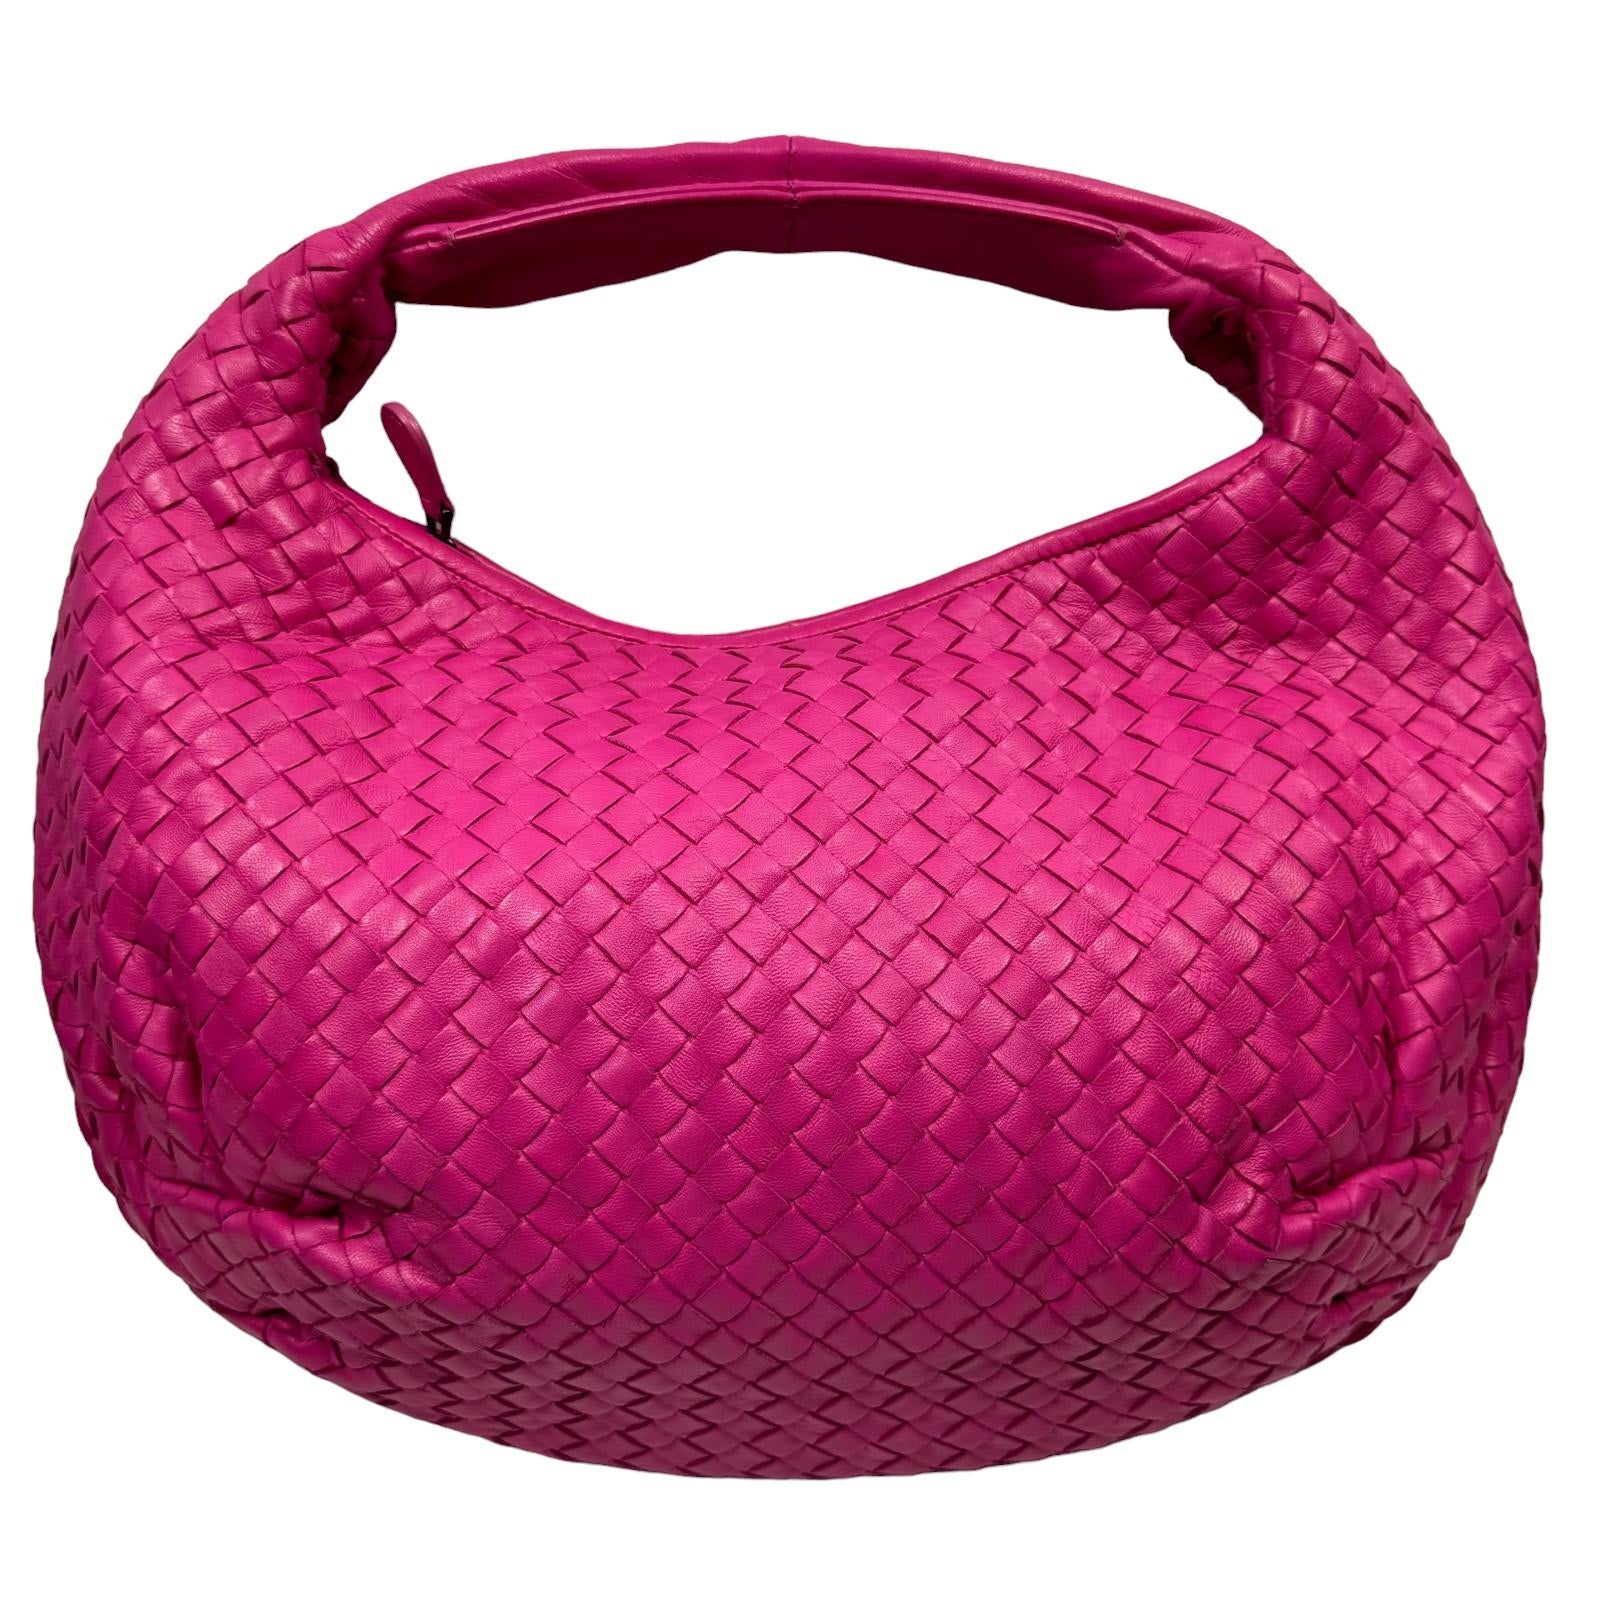 Authentic Bottega Veneta Belly Hobo Intrecciato Nappa Shoulder Bag Pink